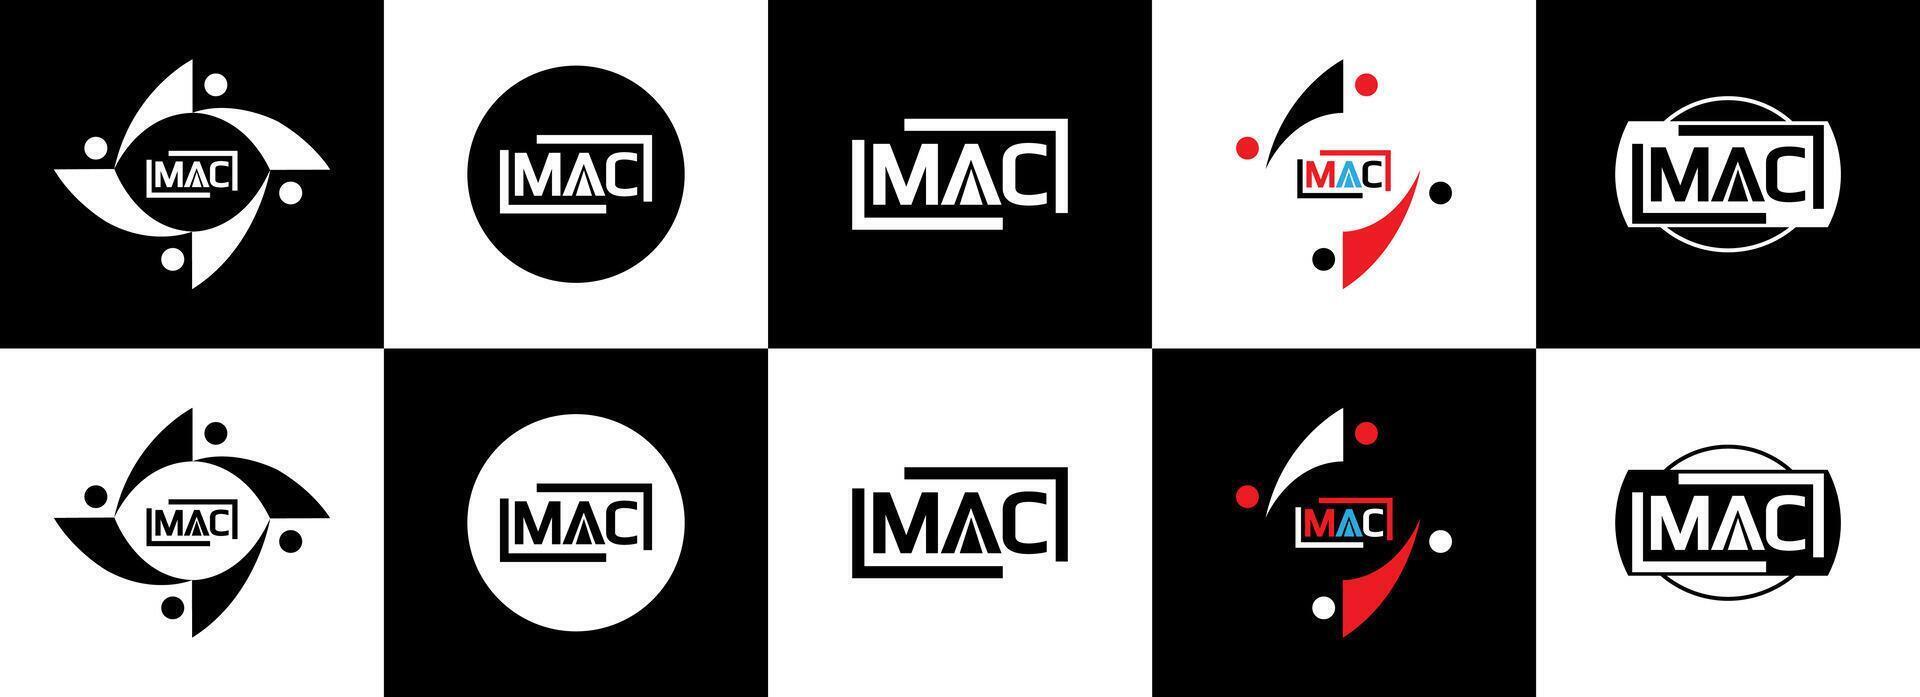 Mac logo. metro un C diseño. blanco Mac carta. Mac, metro un C letra logo diseño. inicial letra Mac vinculado circulo mayúscula monograma logo. metro un C letra logo vector diseño. Pro vector